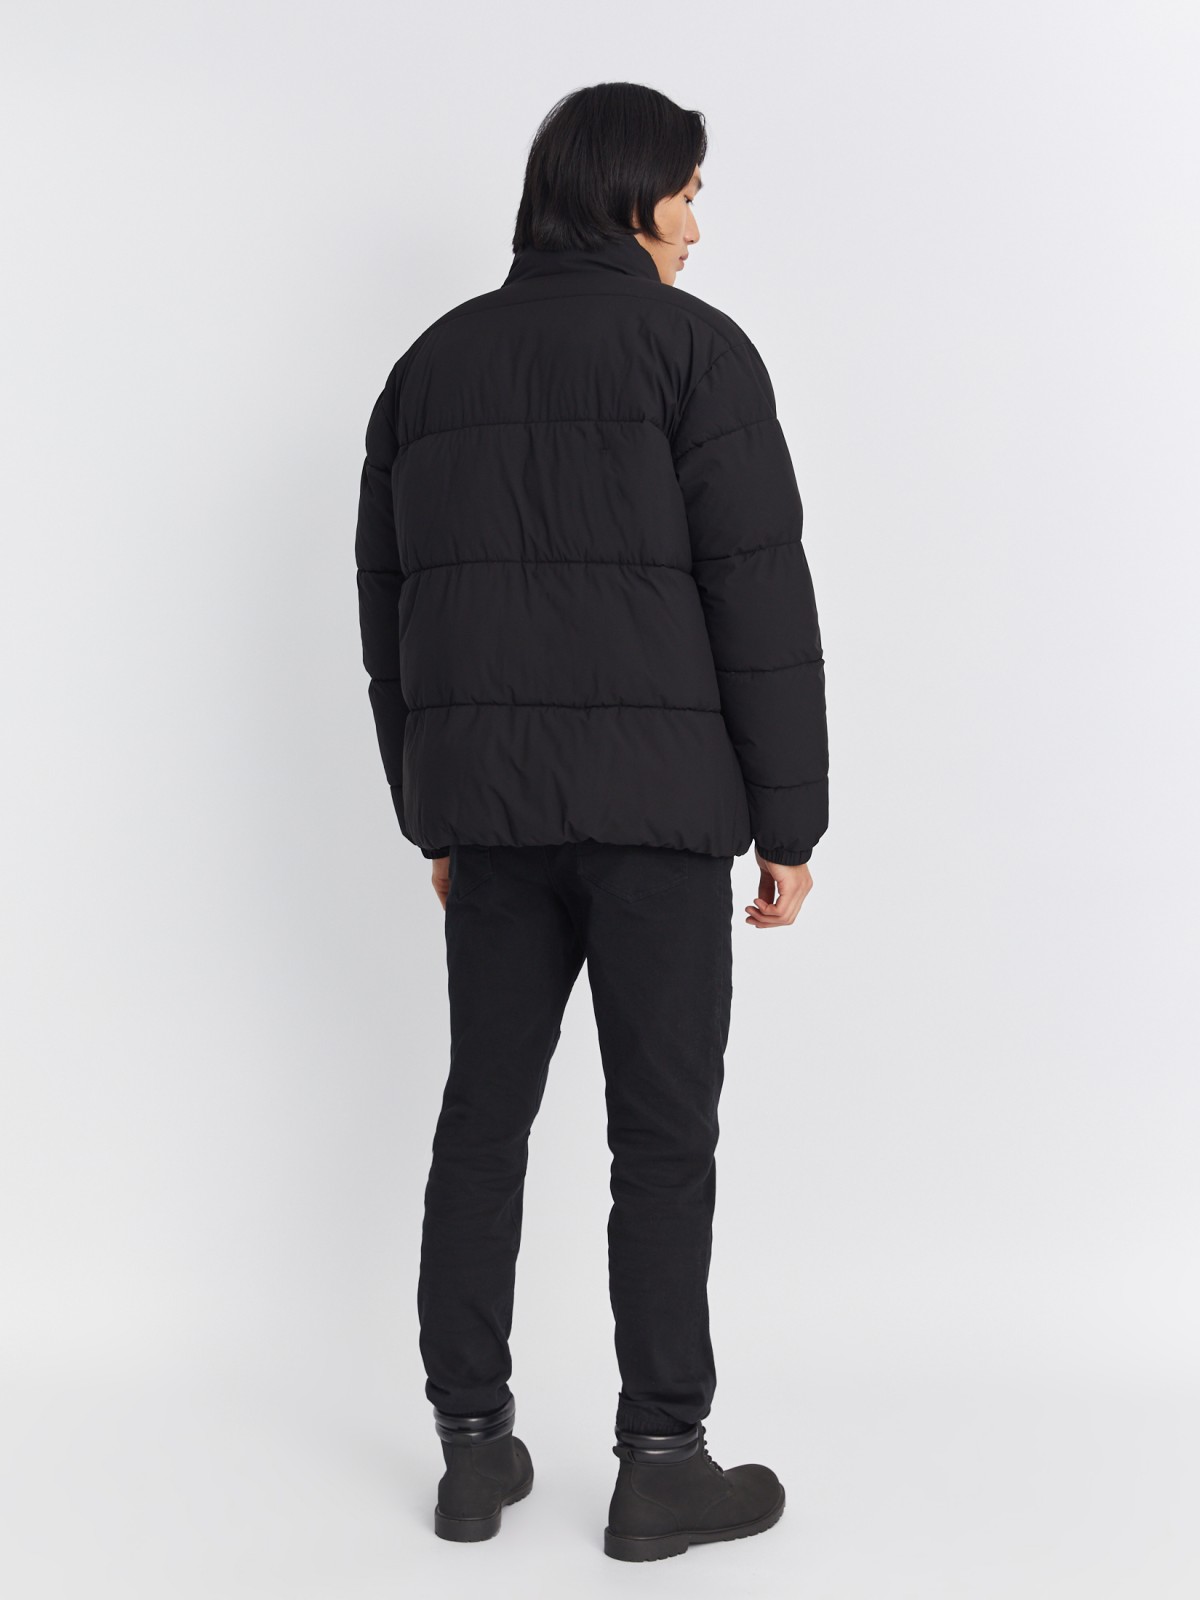 Тёплая стёганая куртка на молнии с воротником-стойкой zolla 01334510L134, цвет черный, размер S - фото 6